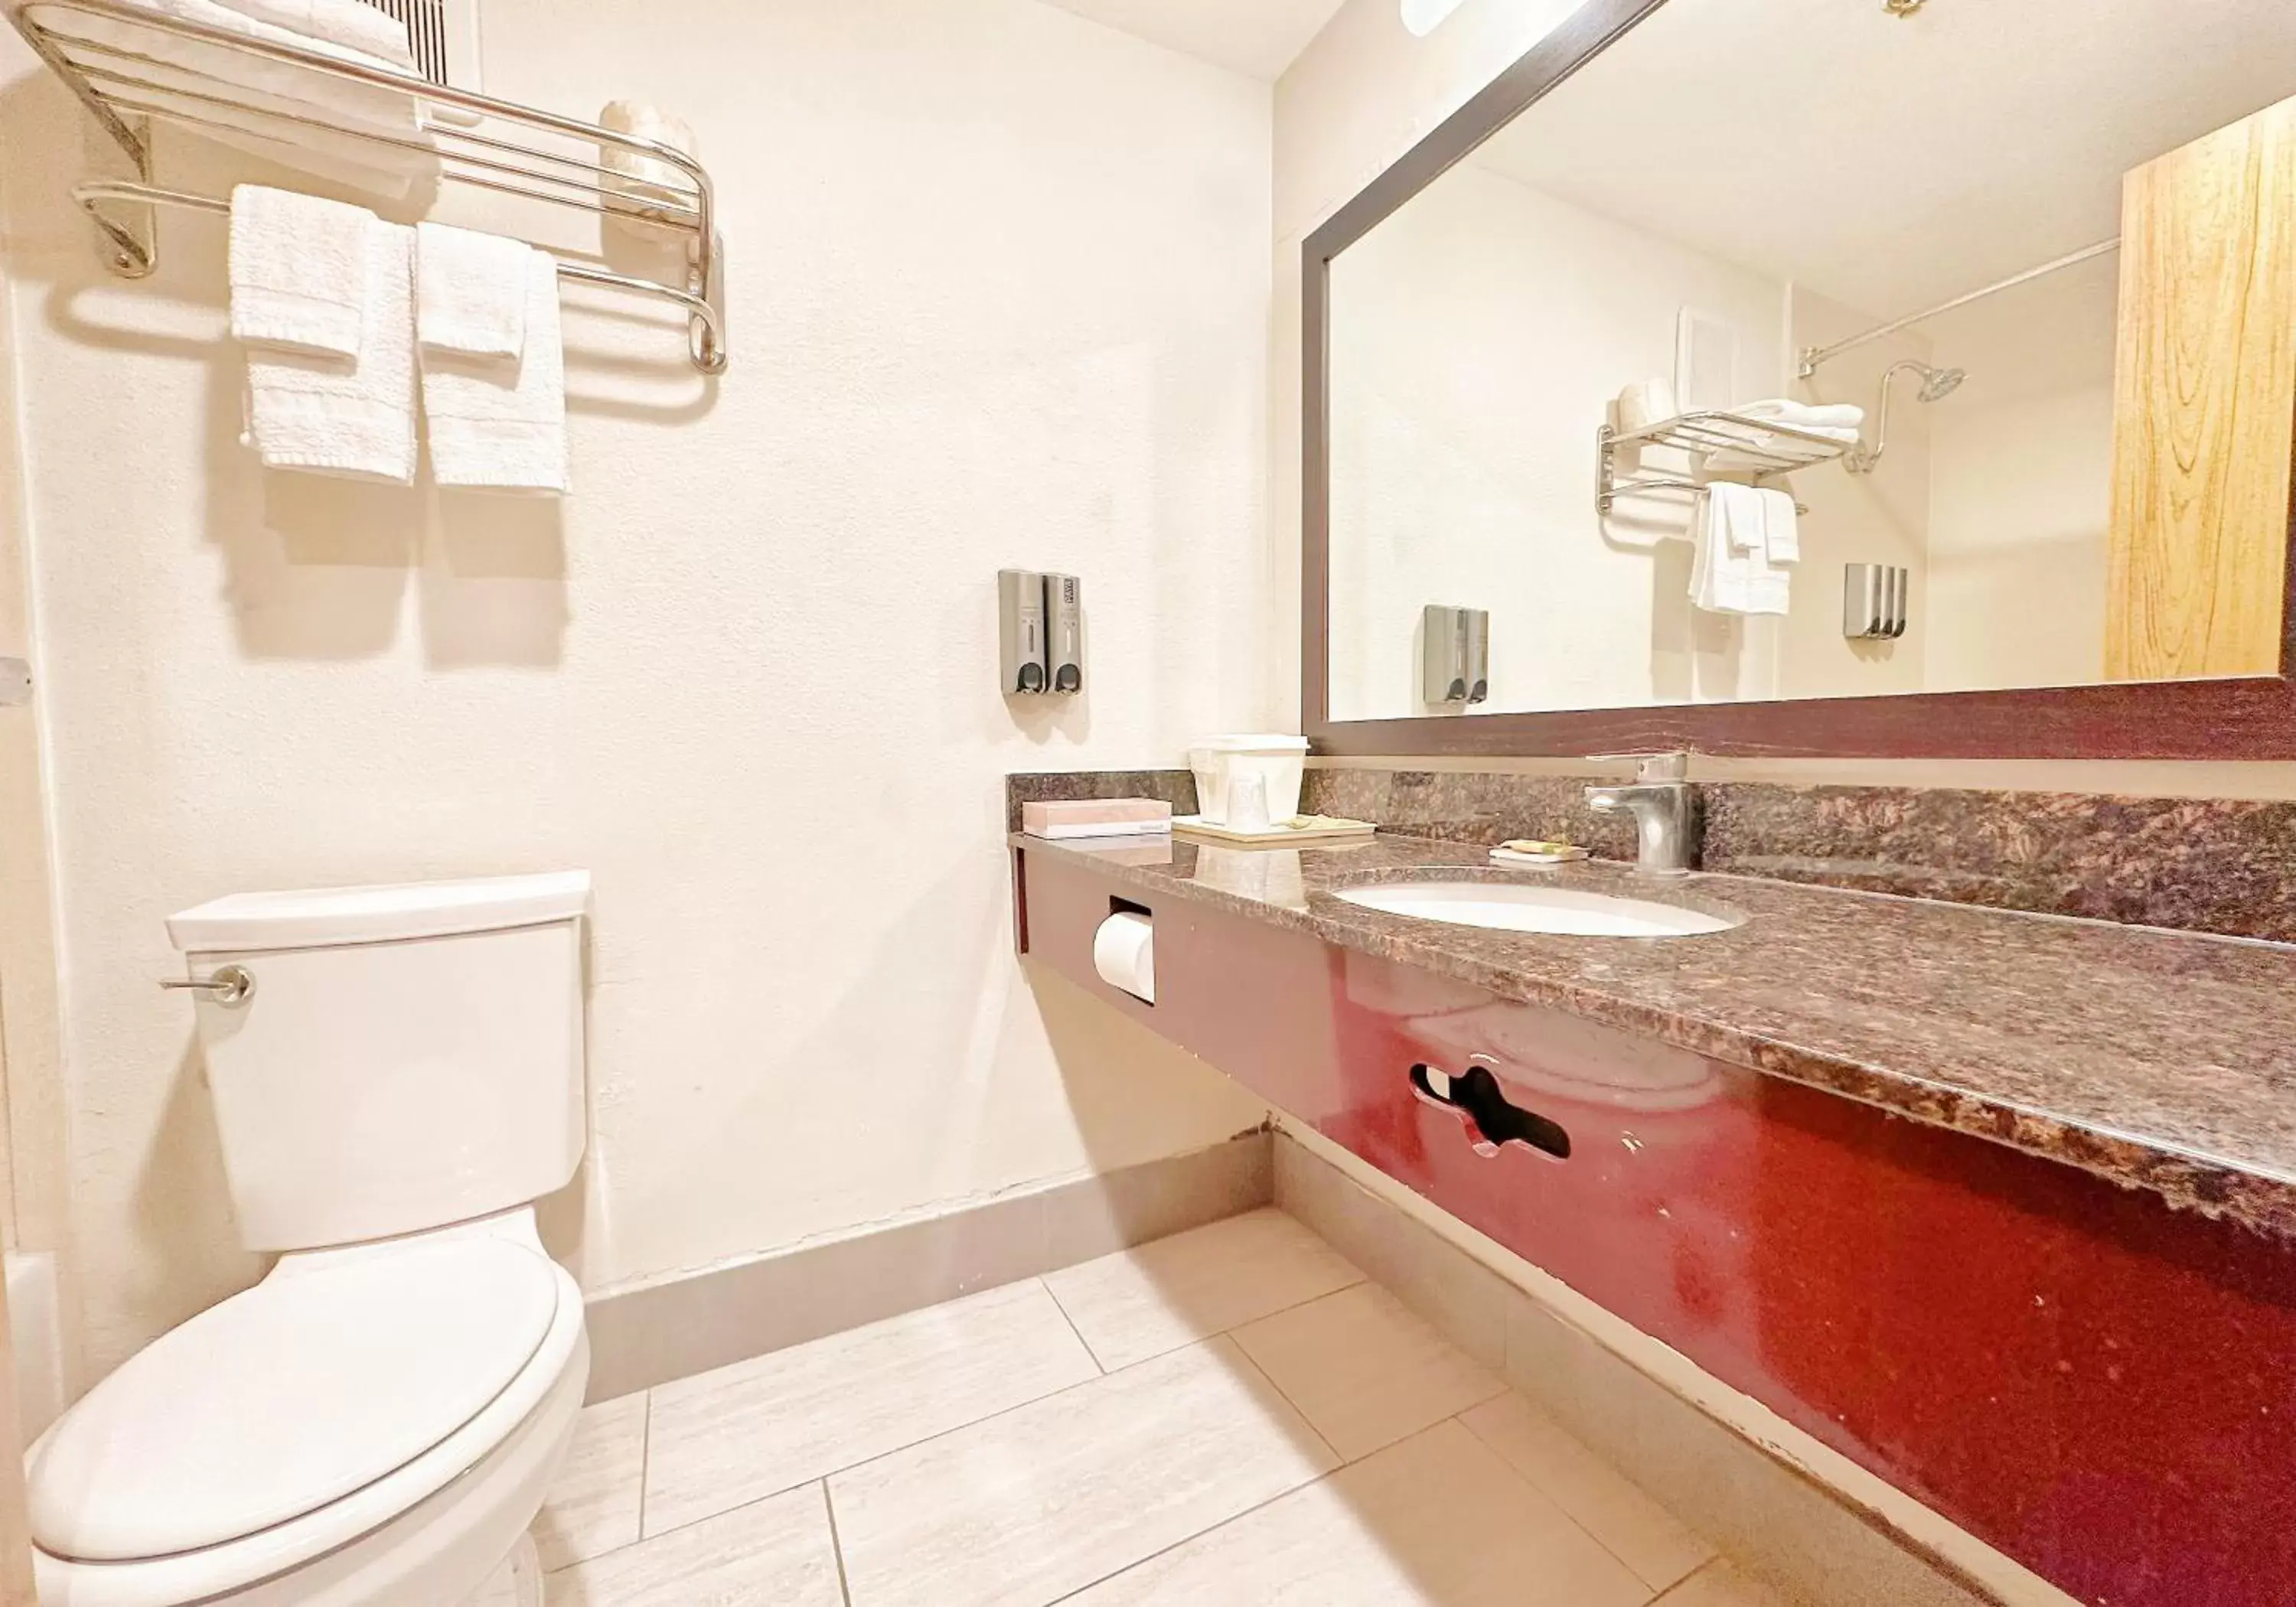 Bathroom in Lincoln Hotel Monterey Park Los Angeles